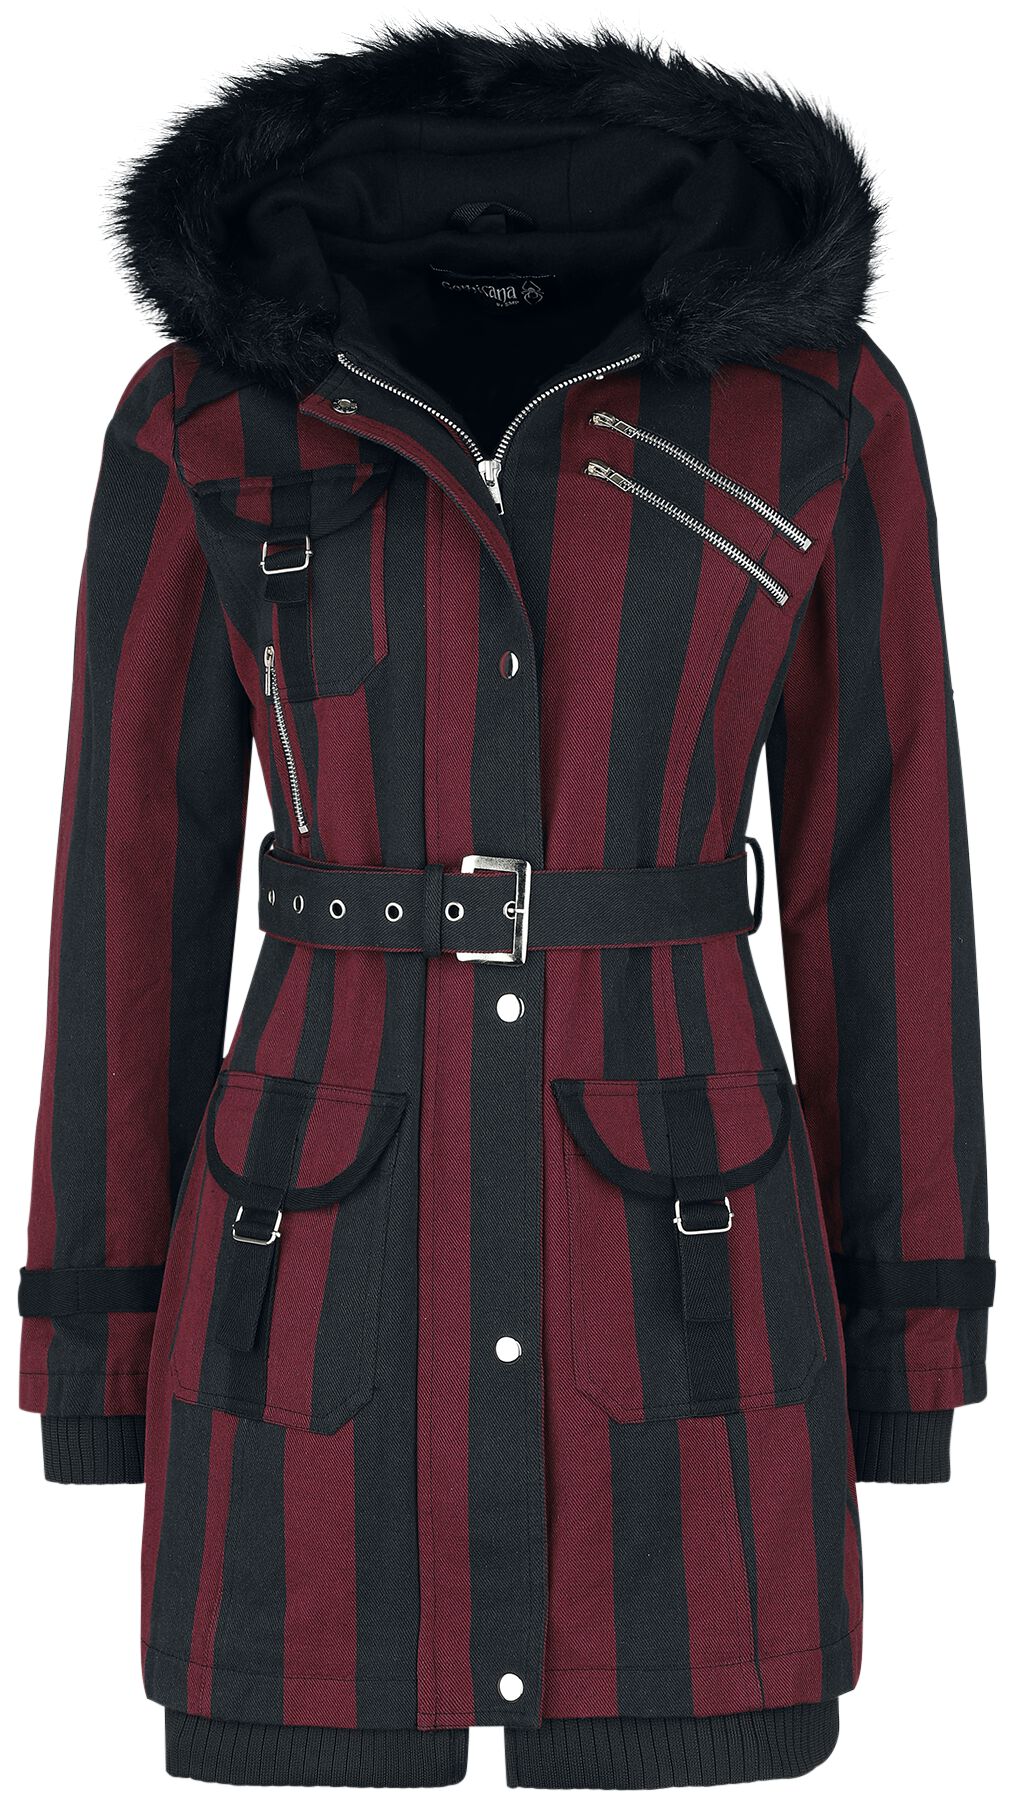 Gothicana by EMP Winterjacke - Multi Pocket Jacket - XS bis 5XL - für Damen - Größe XL - schwarz/rot